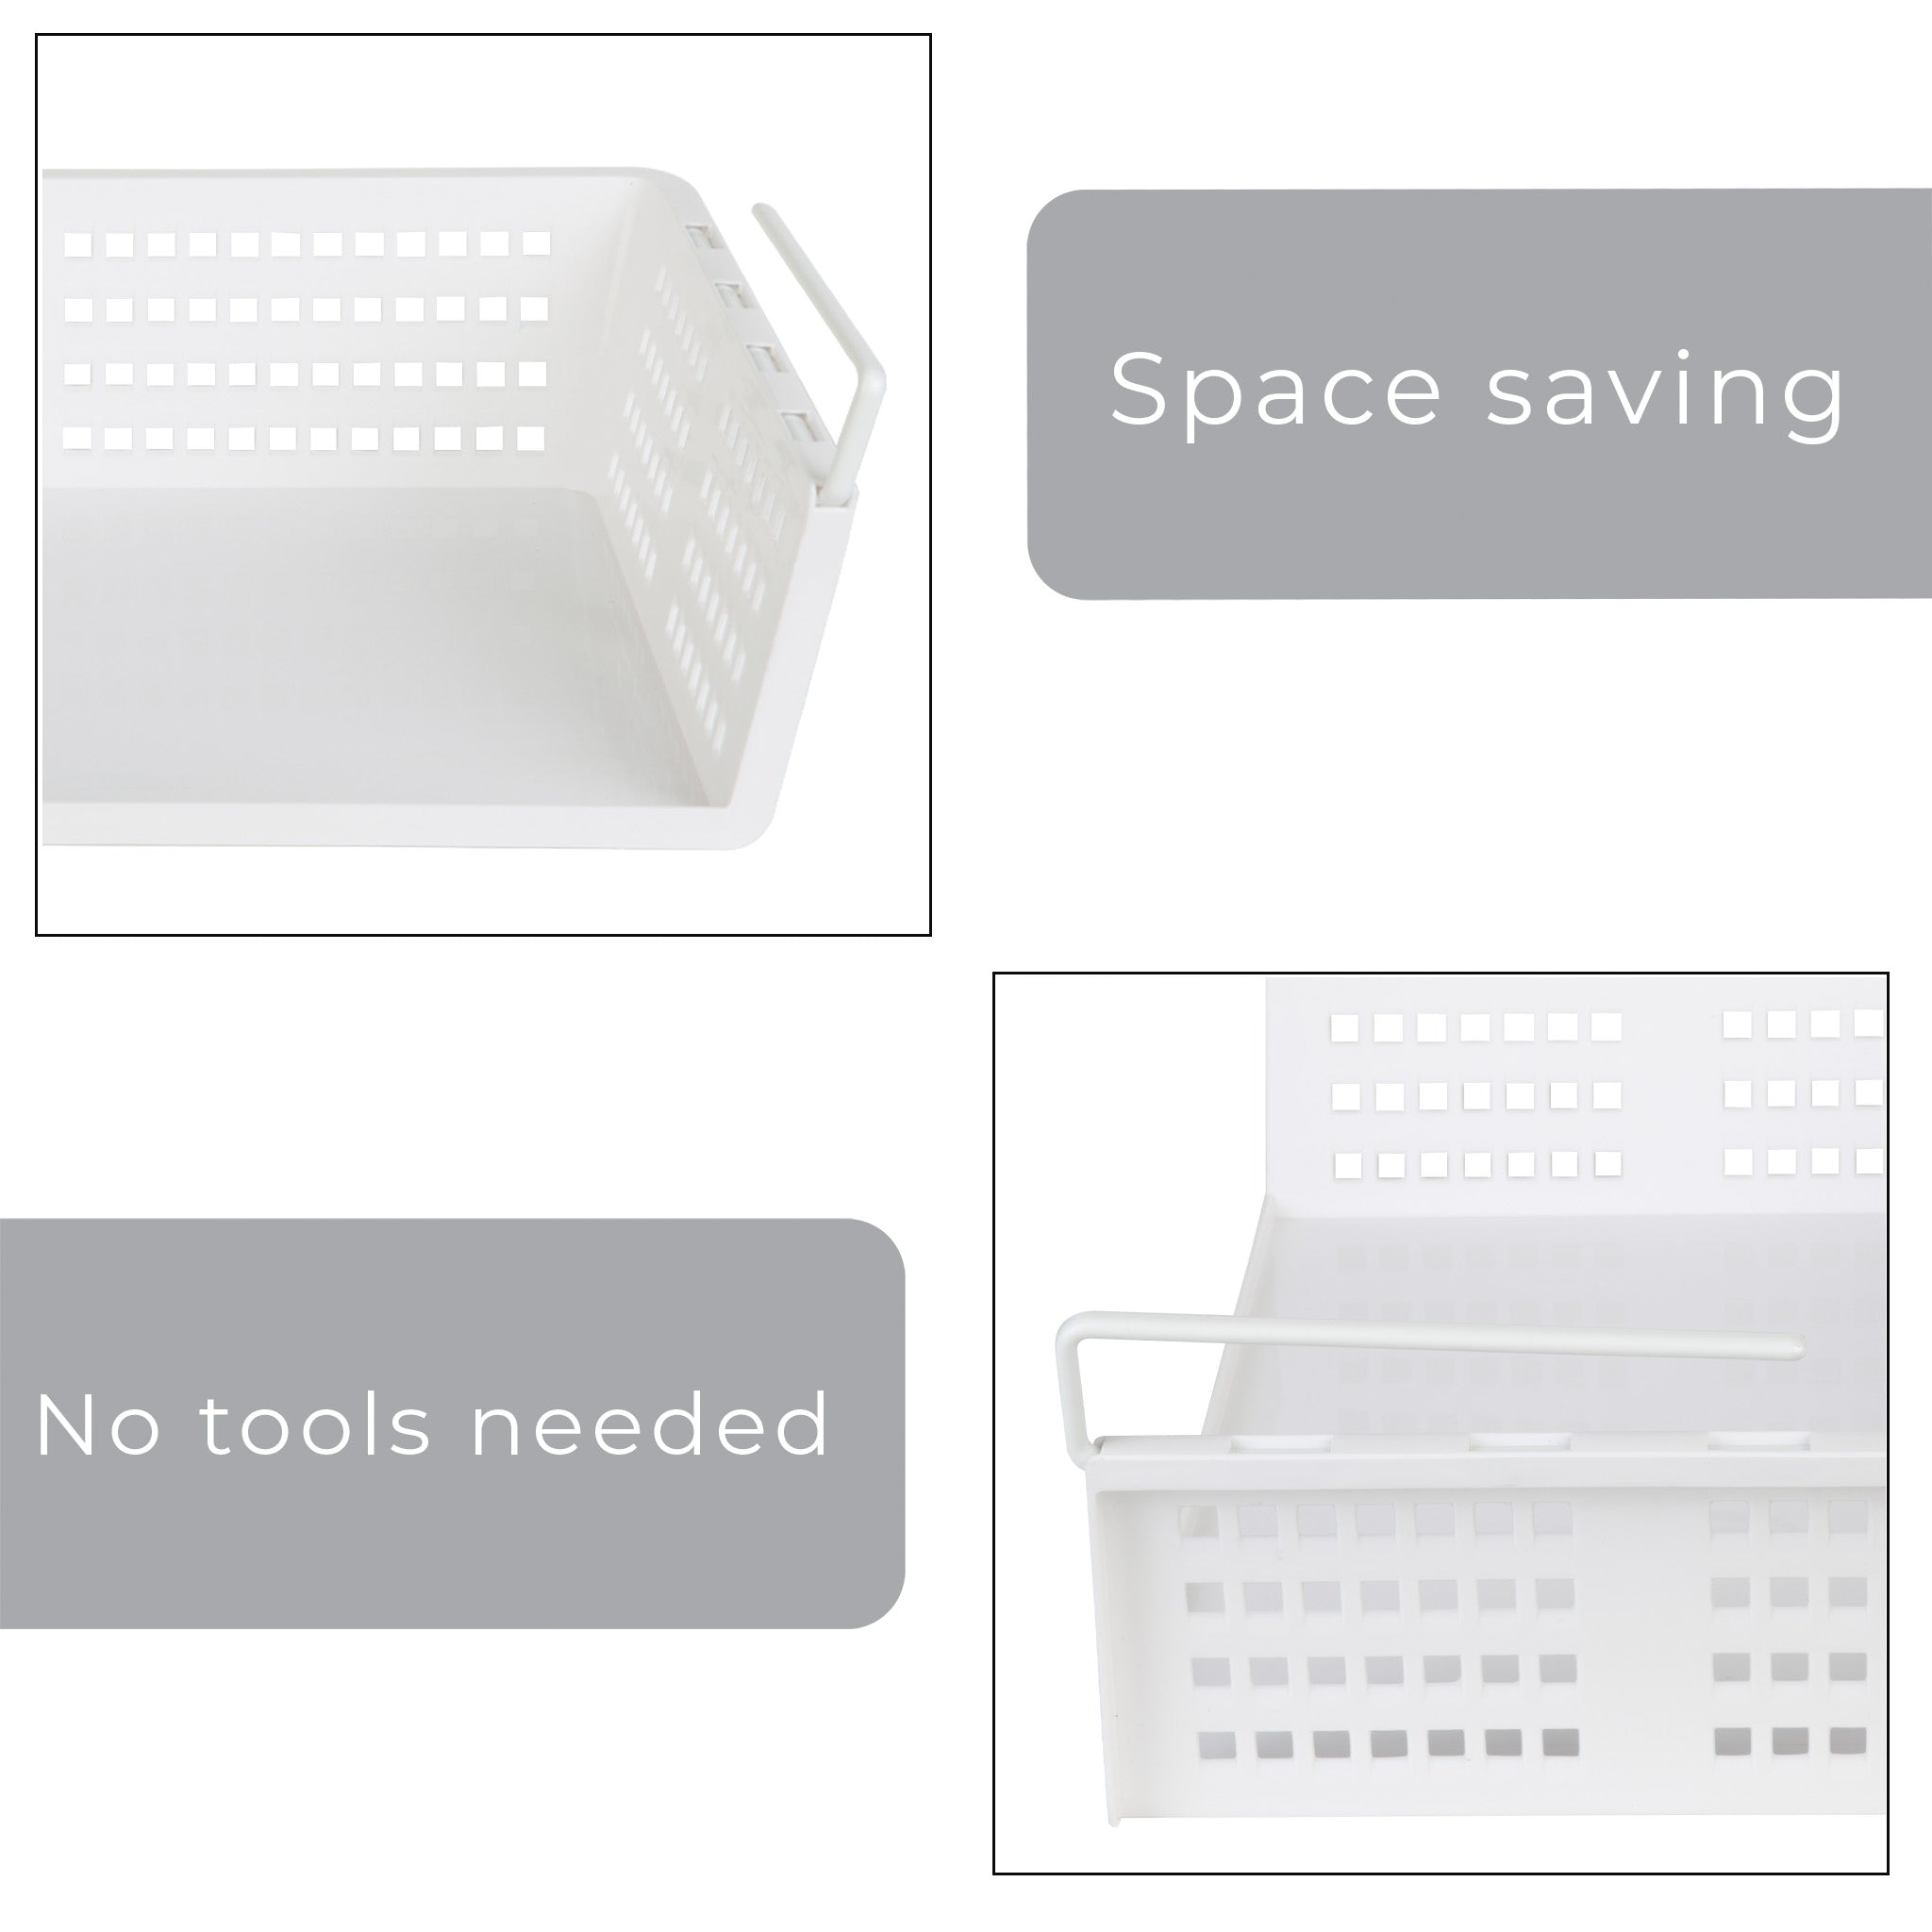 Smart Design Undershelf Storage Basket W